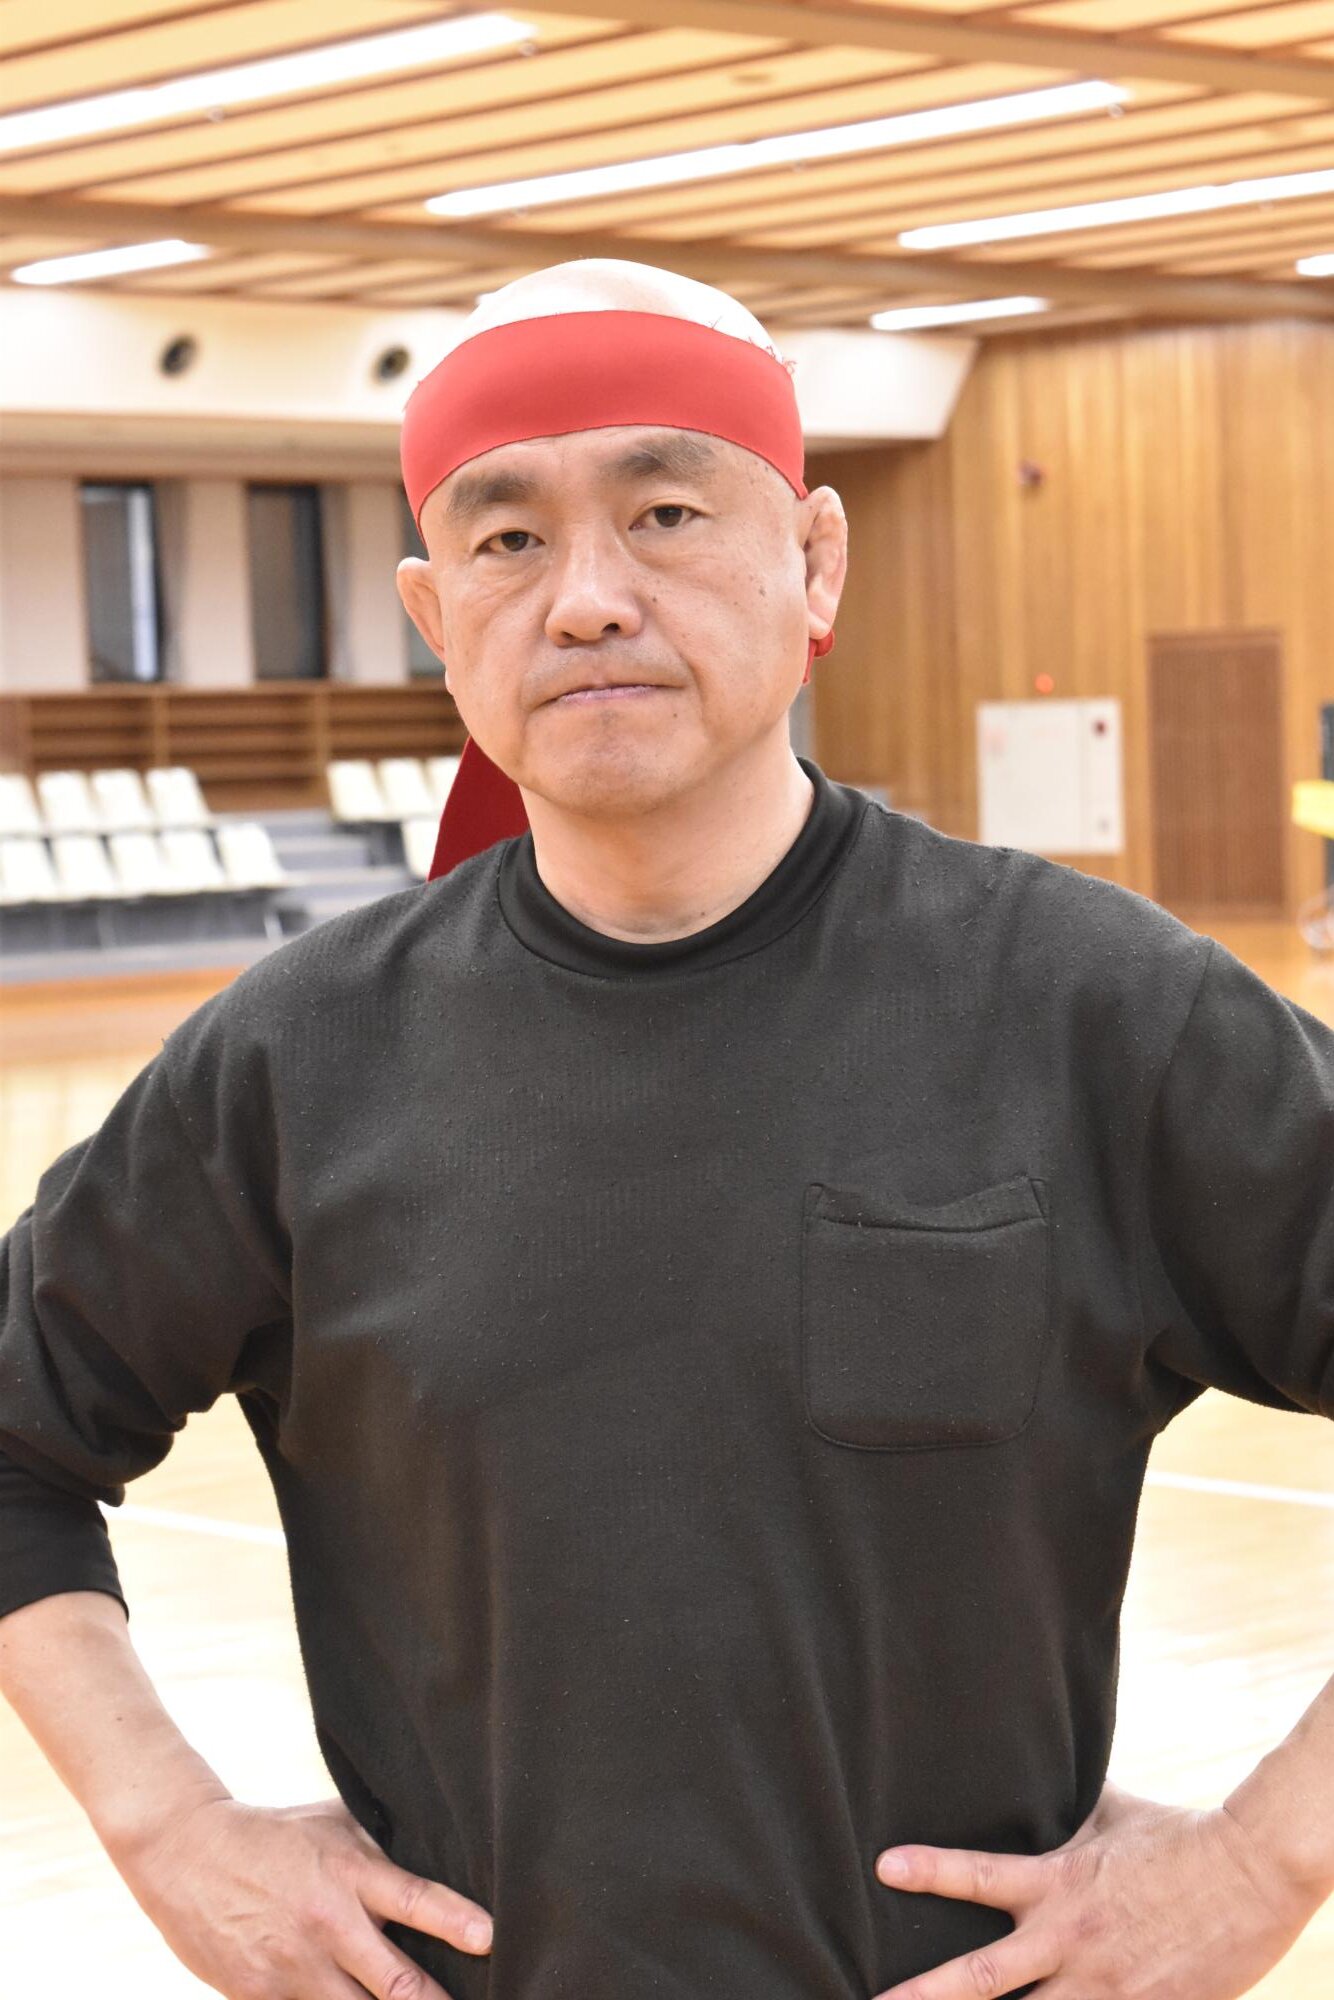 運営、マッチメイク、選手と何足ものわらじを履く代表の脇海道弘一さん。今年55歳になる現在も現役レスラーとしてリングに立つ